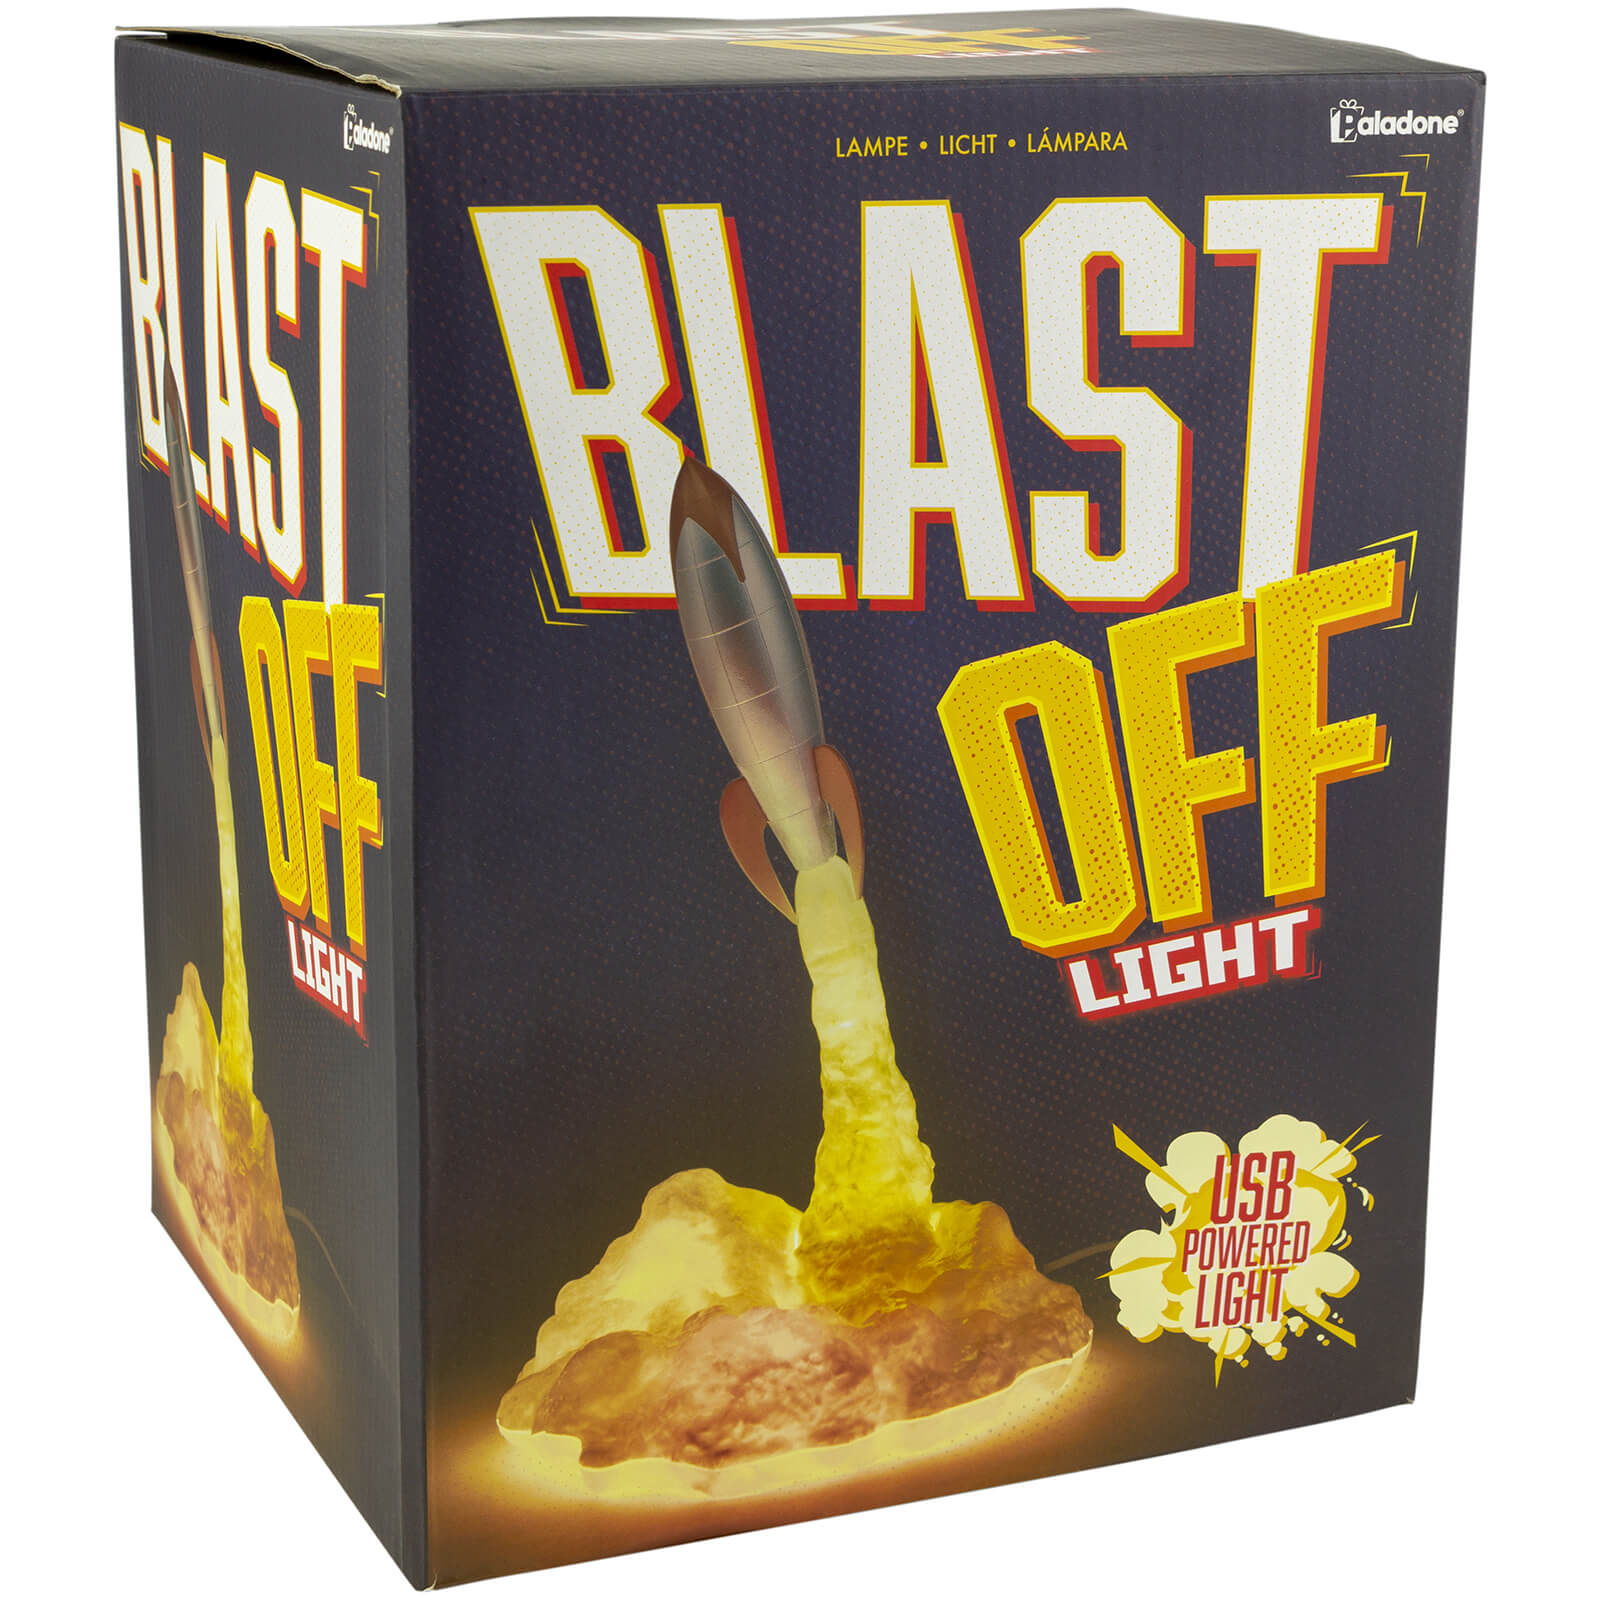 Blast Off Light